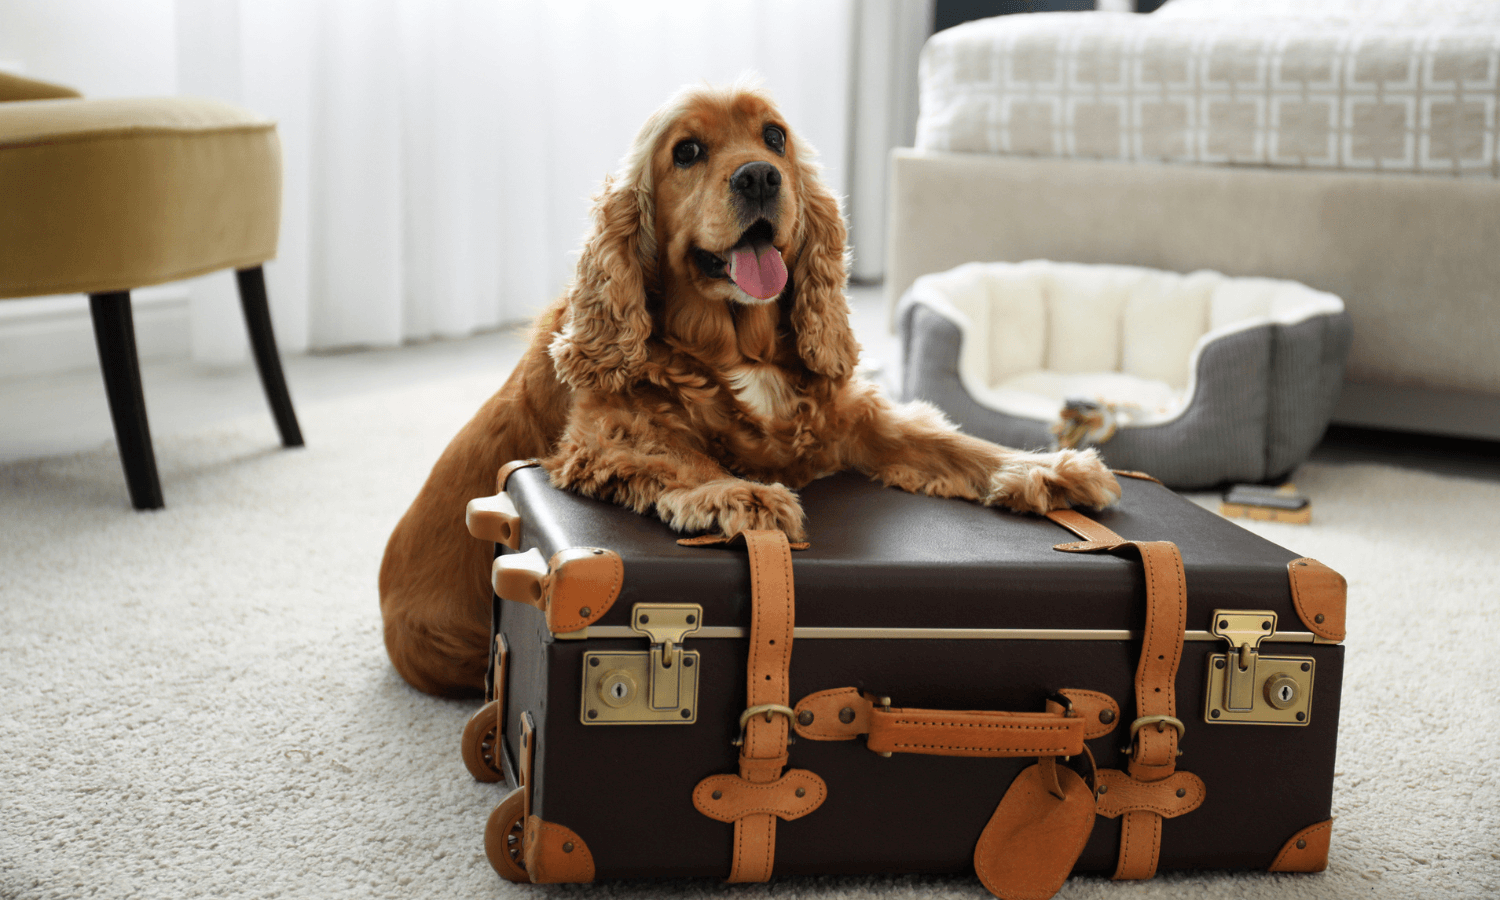 Wer zu Ostern Urlaub mit Hund machen möchte, kann in einem Hundehotel übernachten. Auf dem Foto sieht man einen Cocker Spaniel im Hotelzimmer. Er liegt neben einem Koffer. © iStock